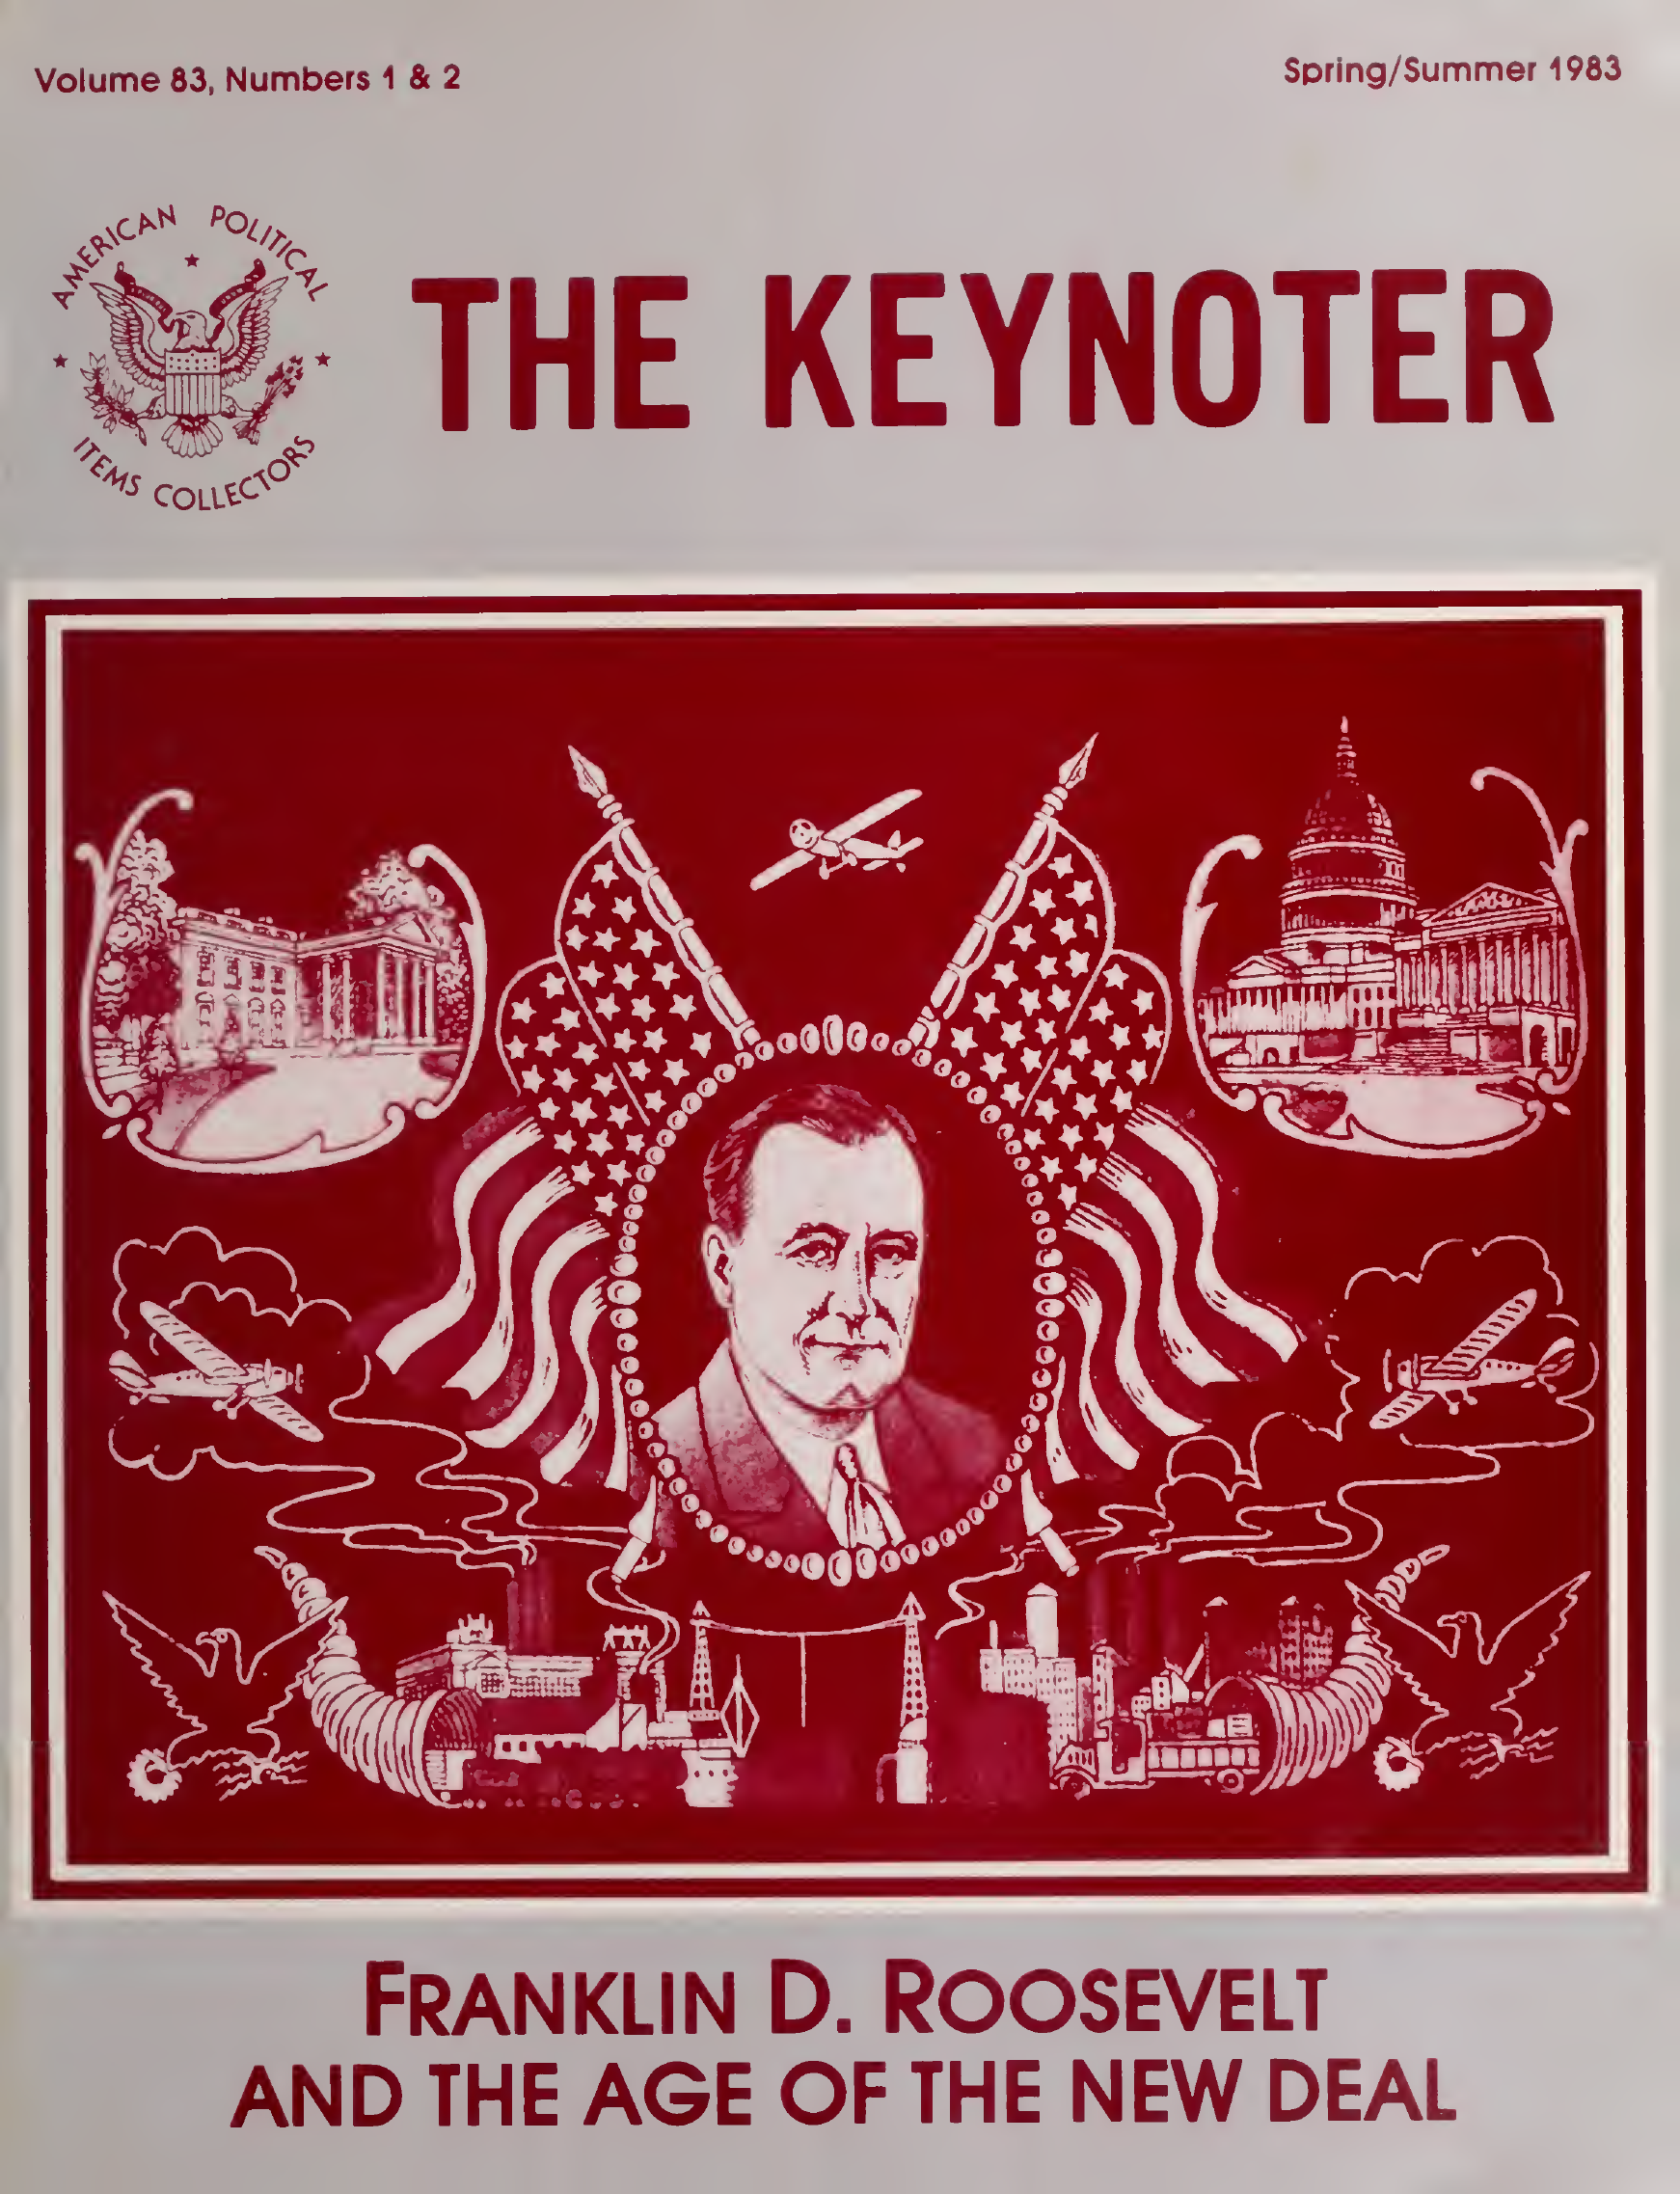 Keynoter 1983 - Spring-Summer - Issue 1 & 2